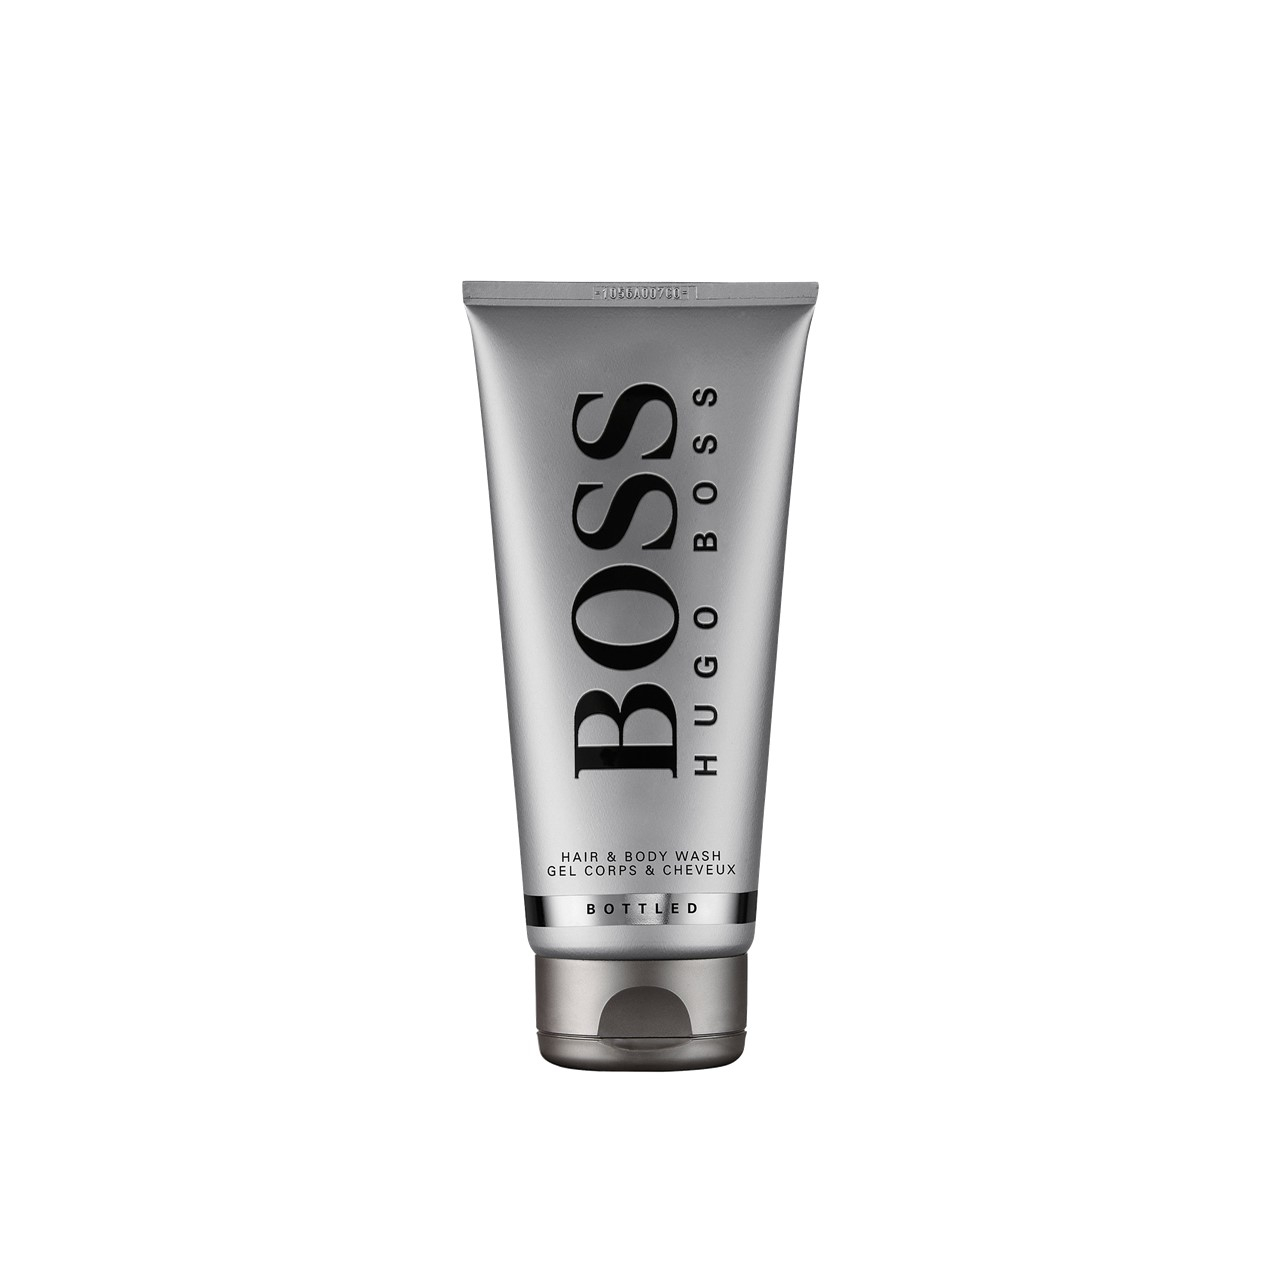 Hugo Boss Boss Bottled Hair & Body Wash 200ml (6.76fl oz)